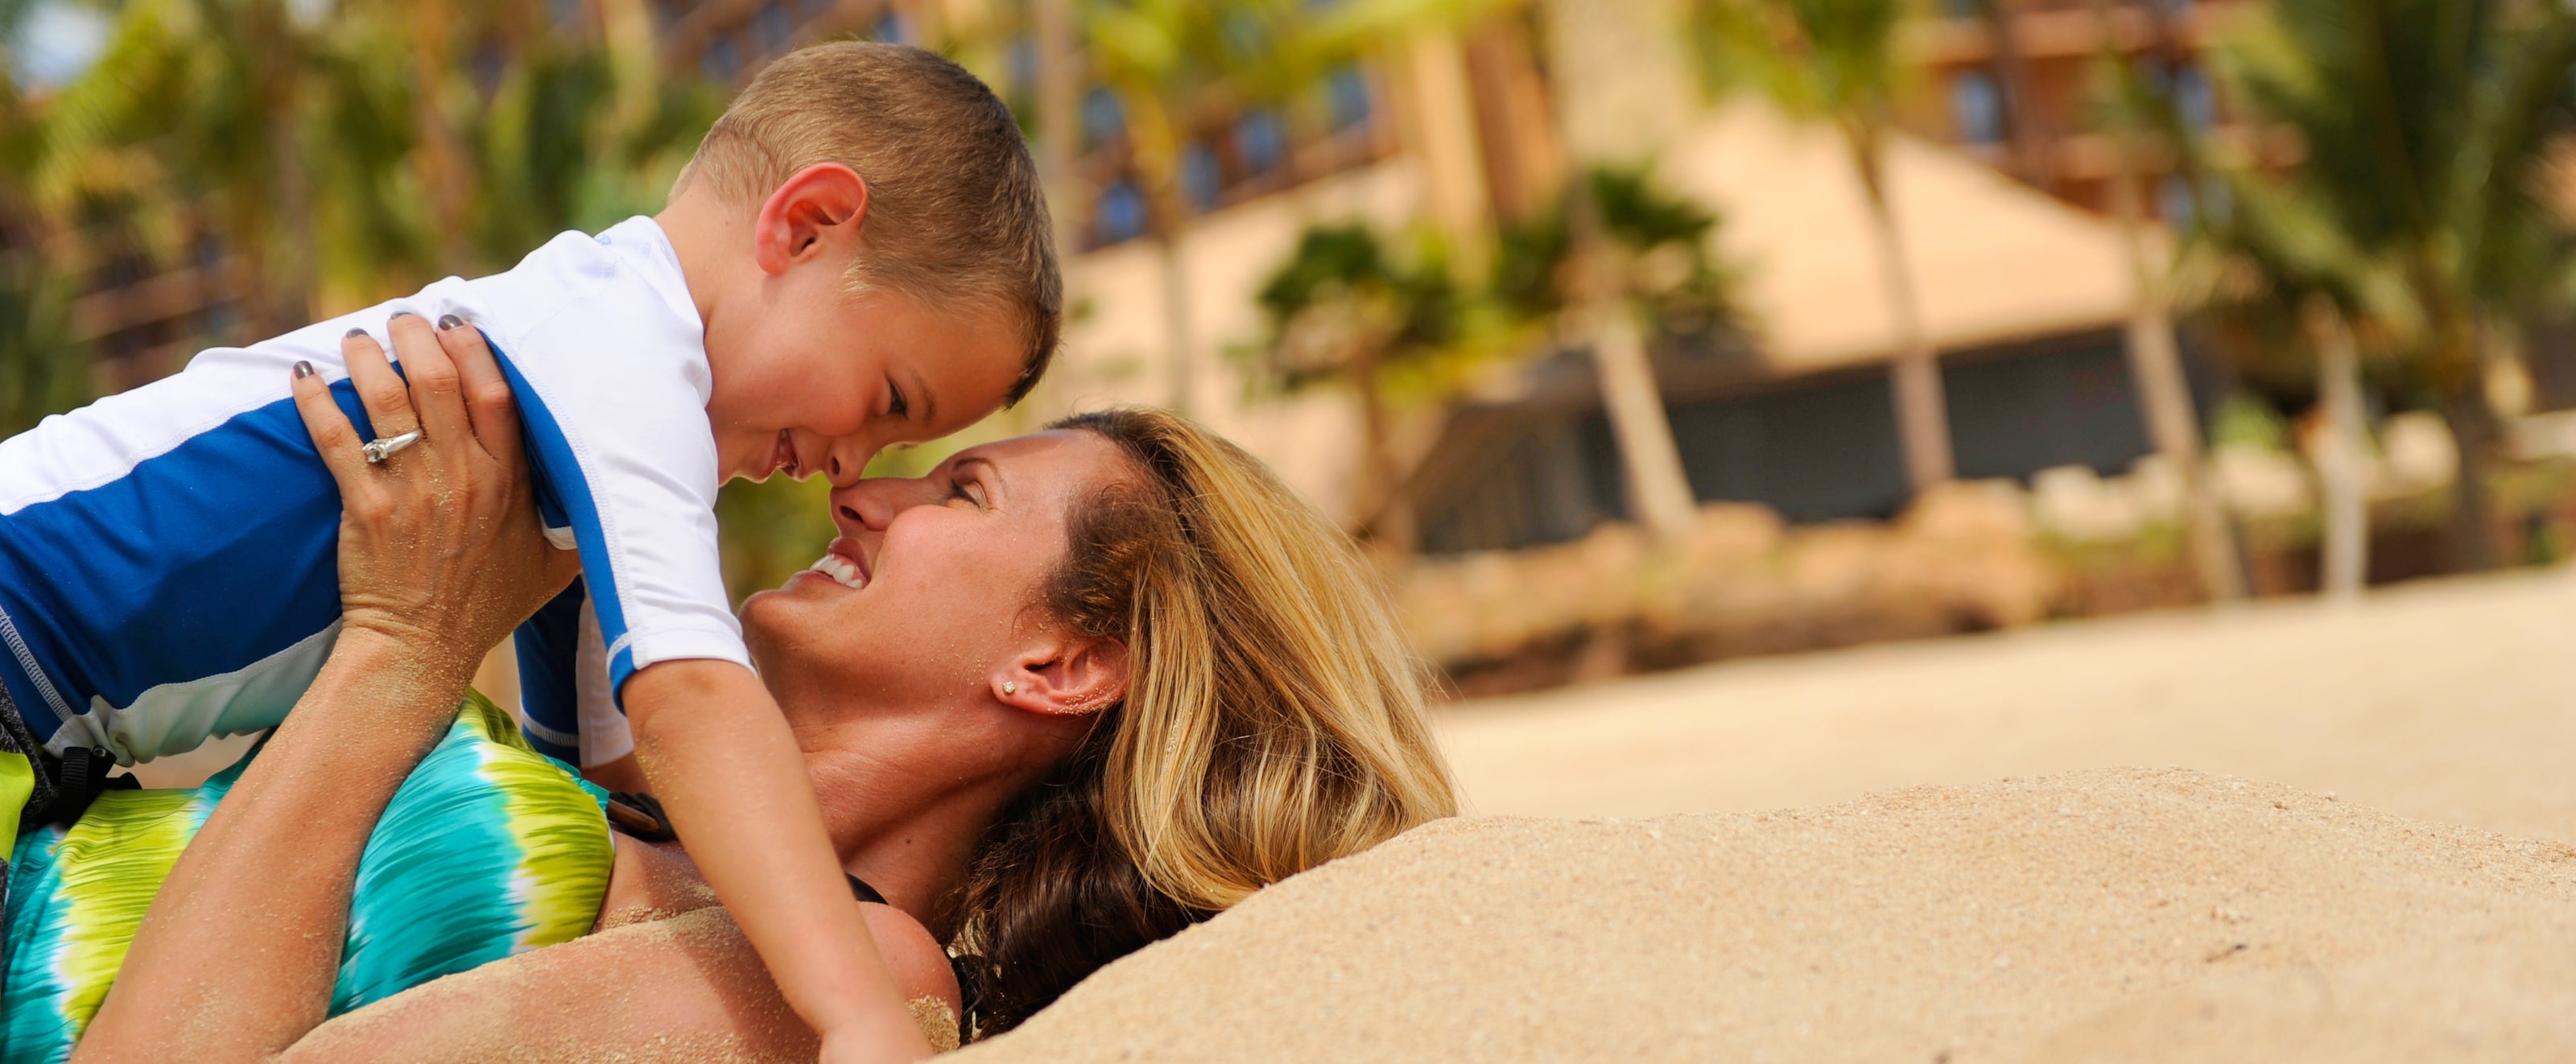 ビーチに仰向けになり、抱っこした小さな息子の鼻に自分の鼻をつけて微笑む母親